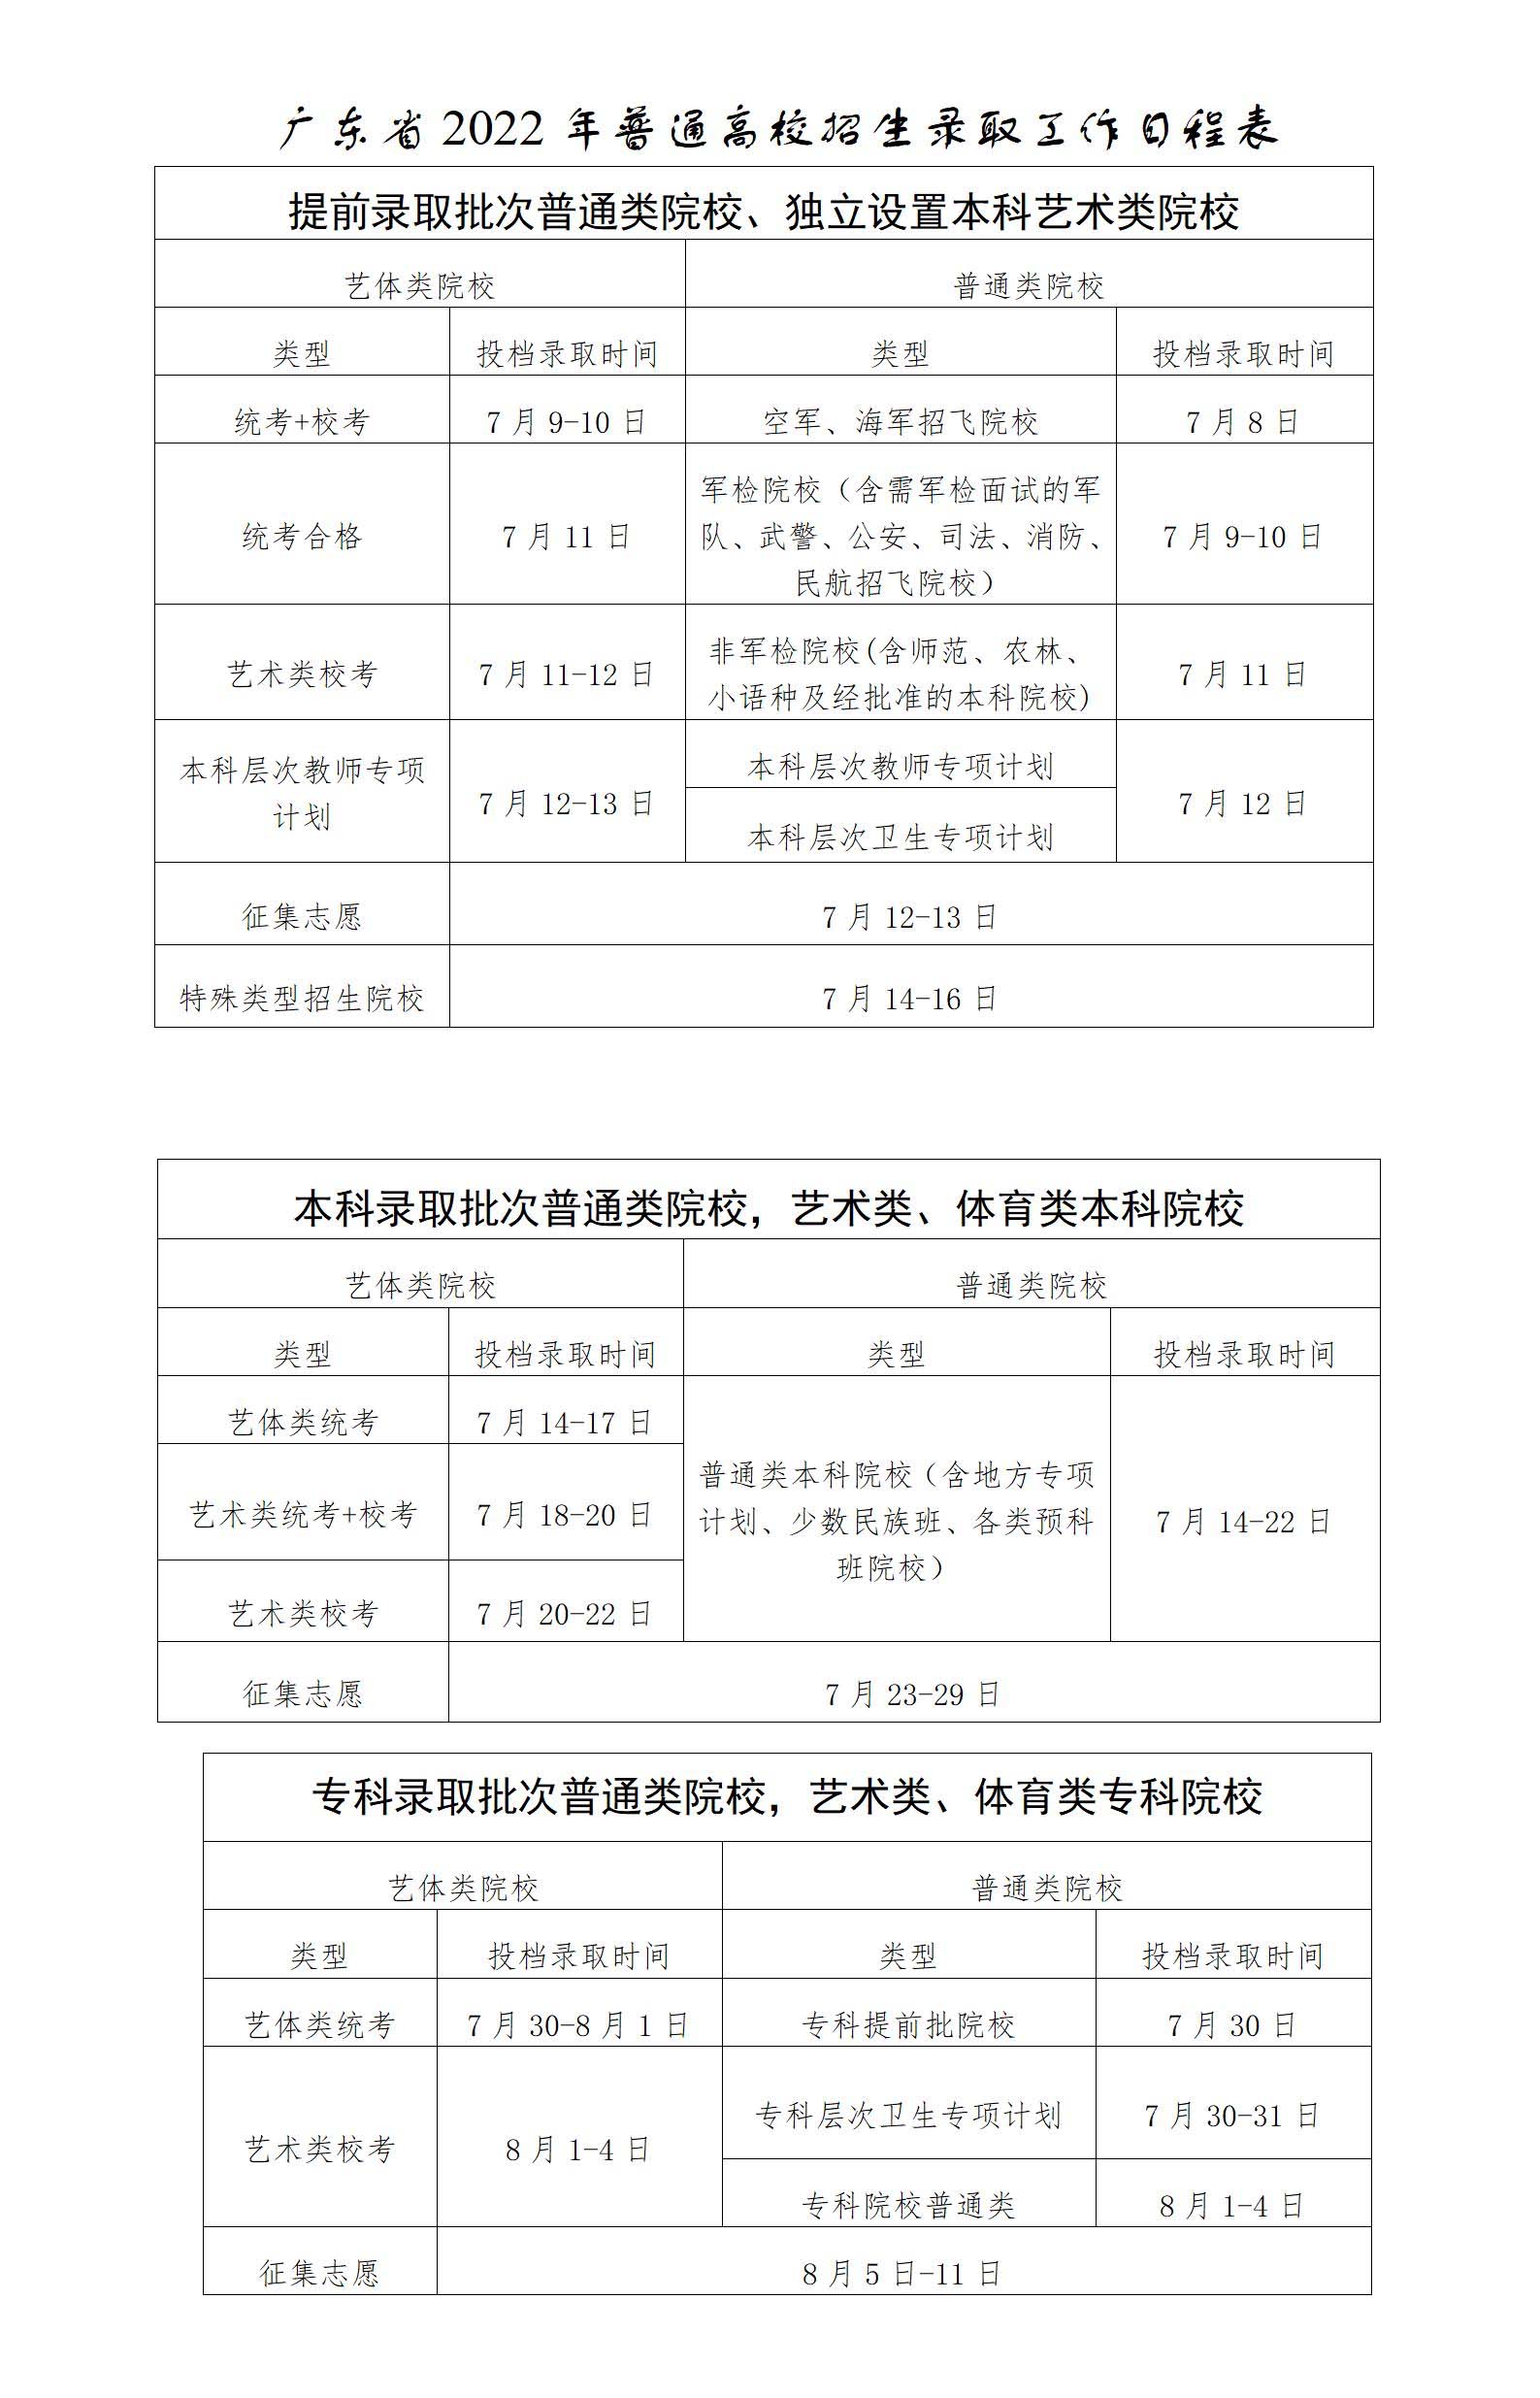 2022年广东省高考录取时间安排